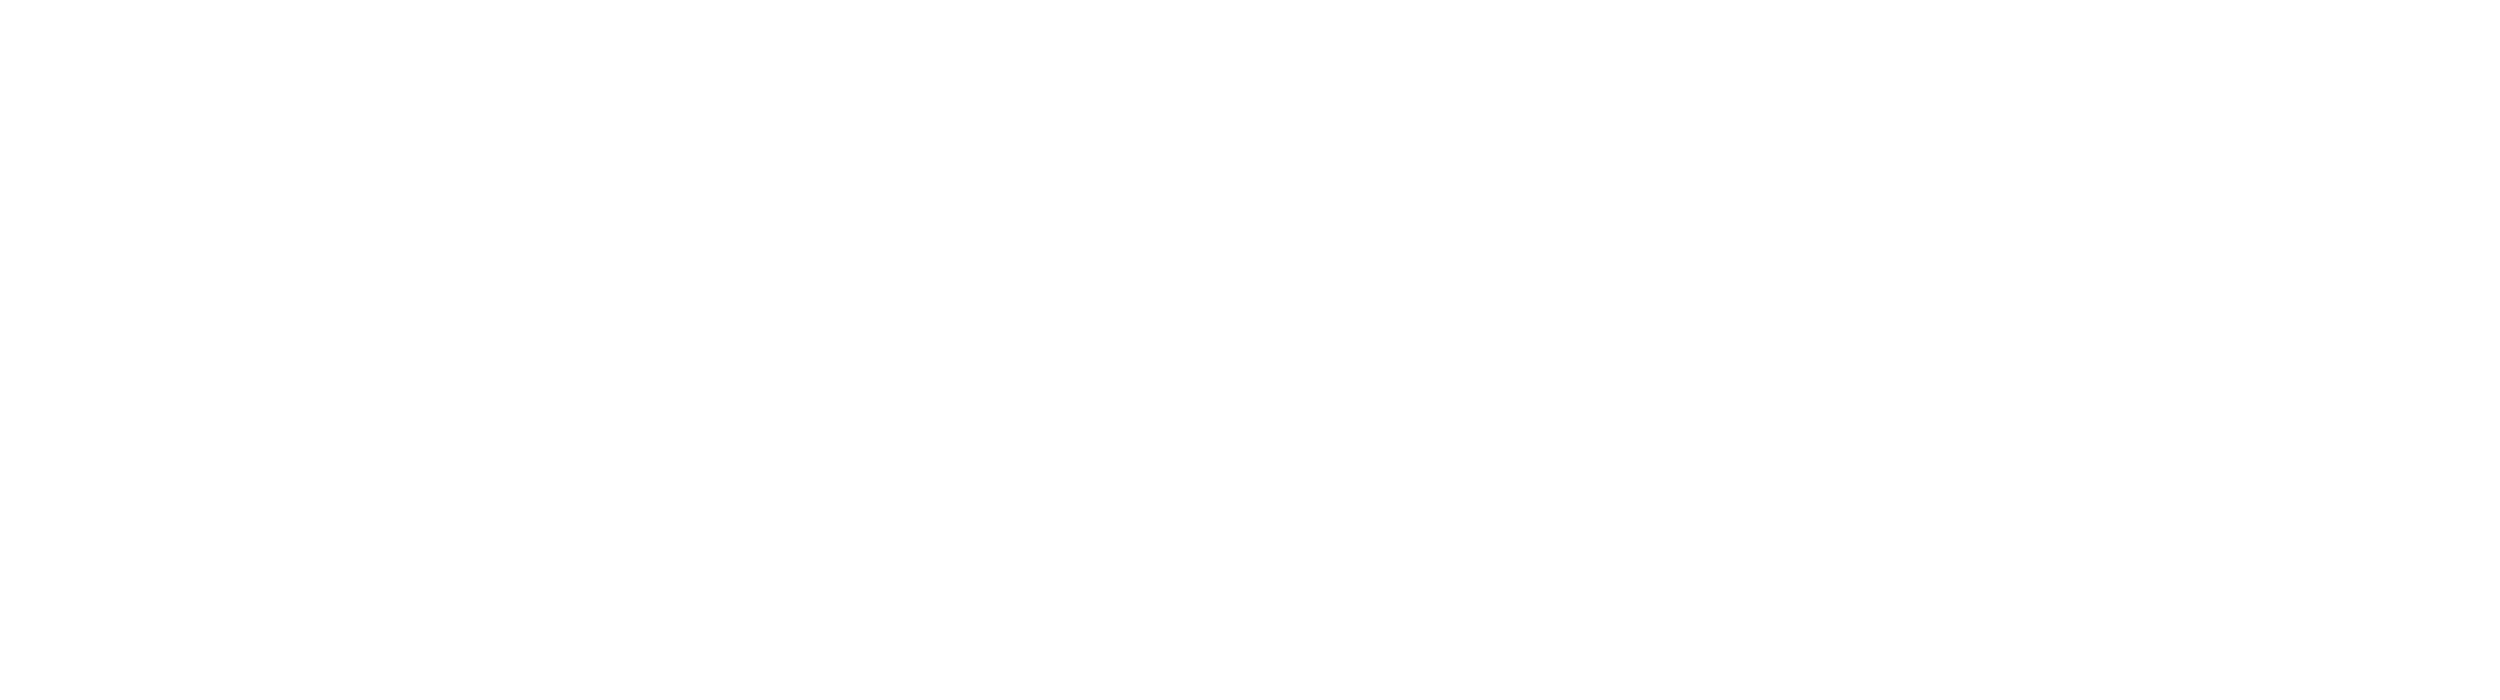 ICTM 2024